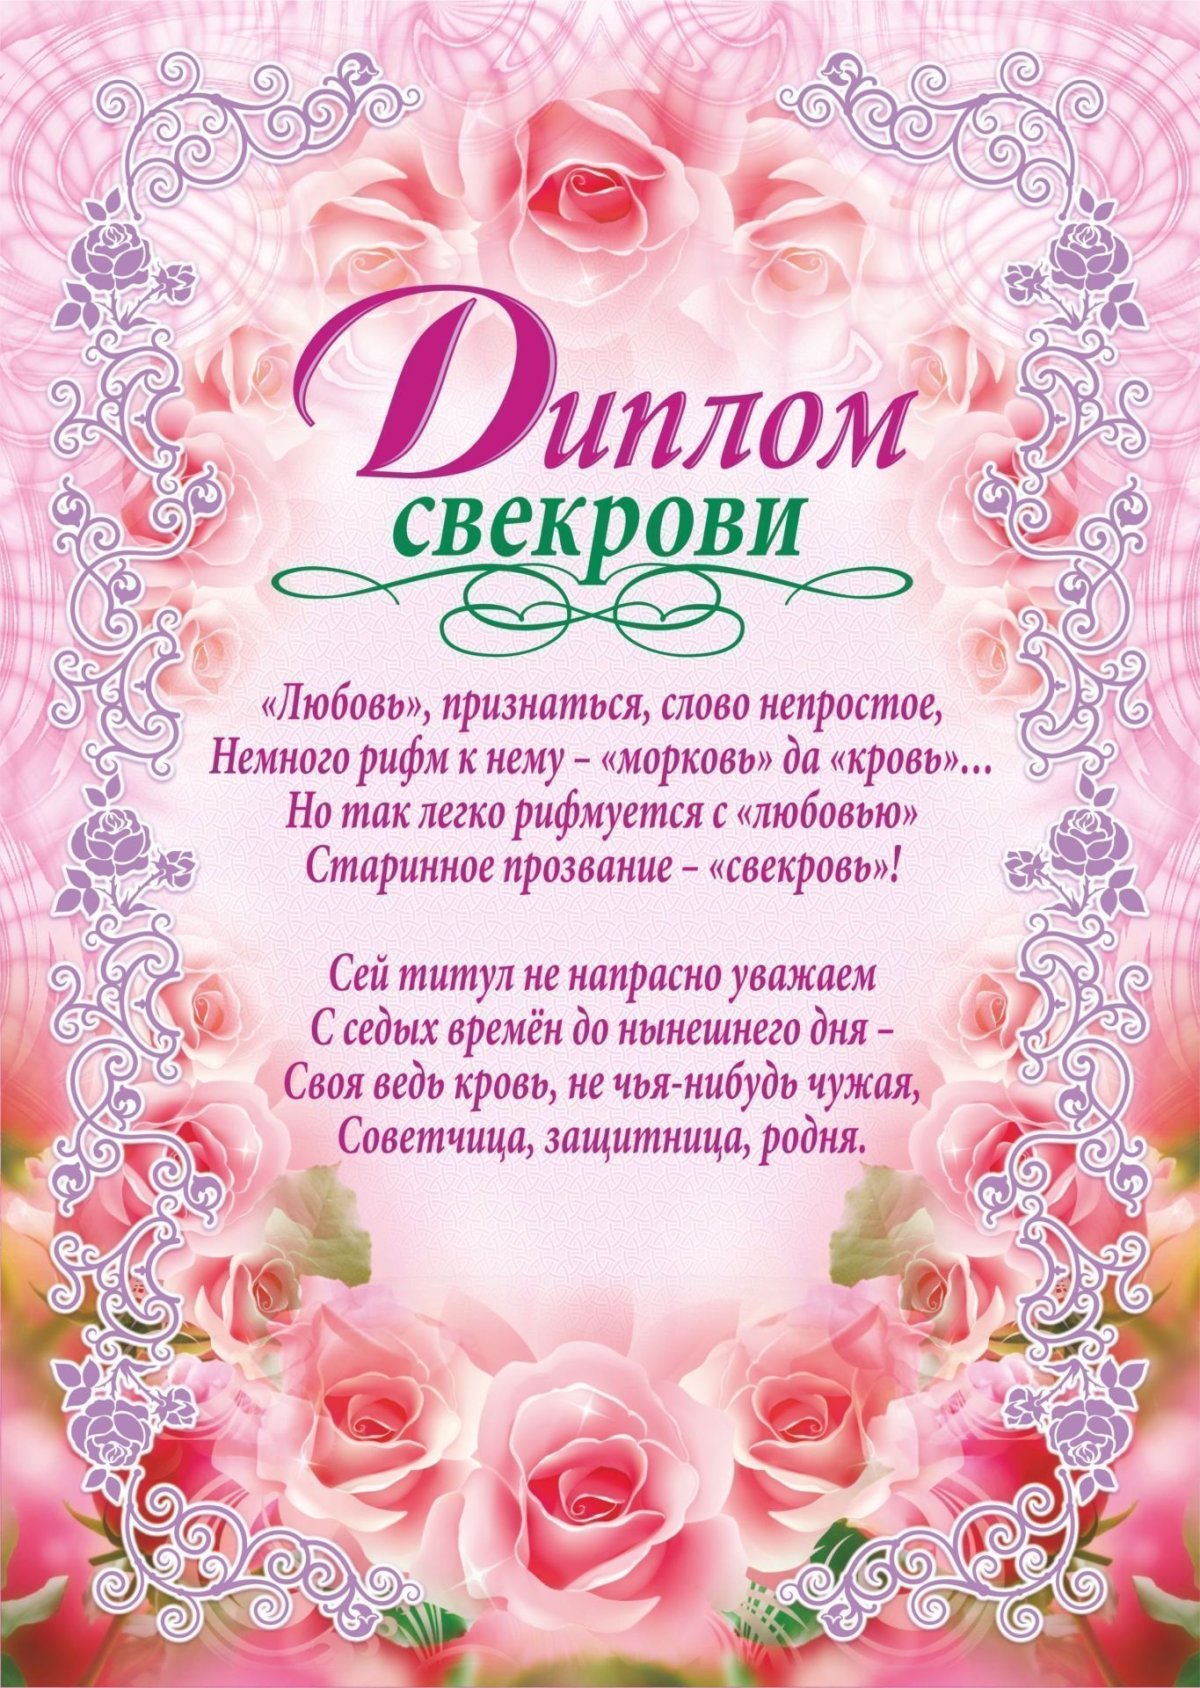 Поздравления с днем рождения свекрови 65 лет своими словами - tdksovremennik.ru